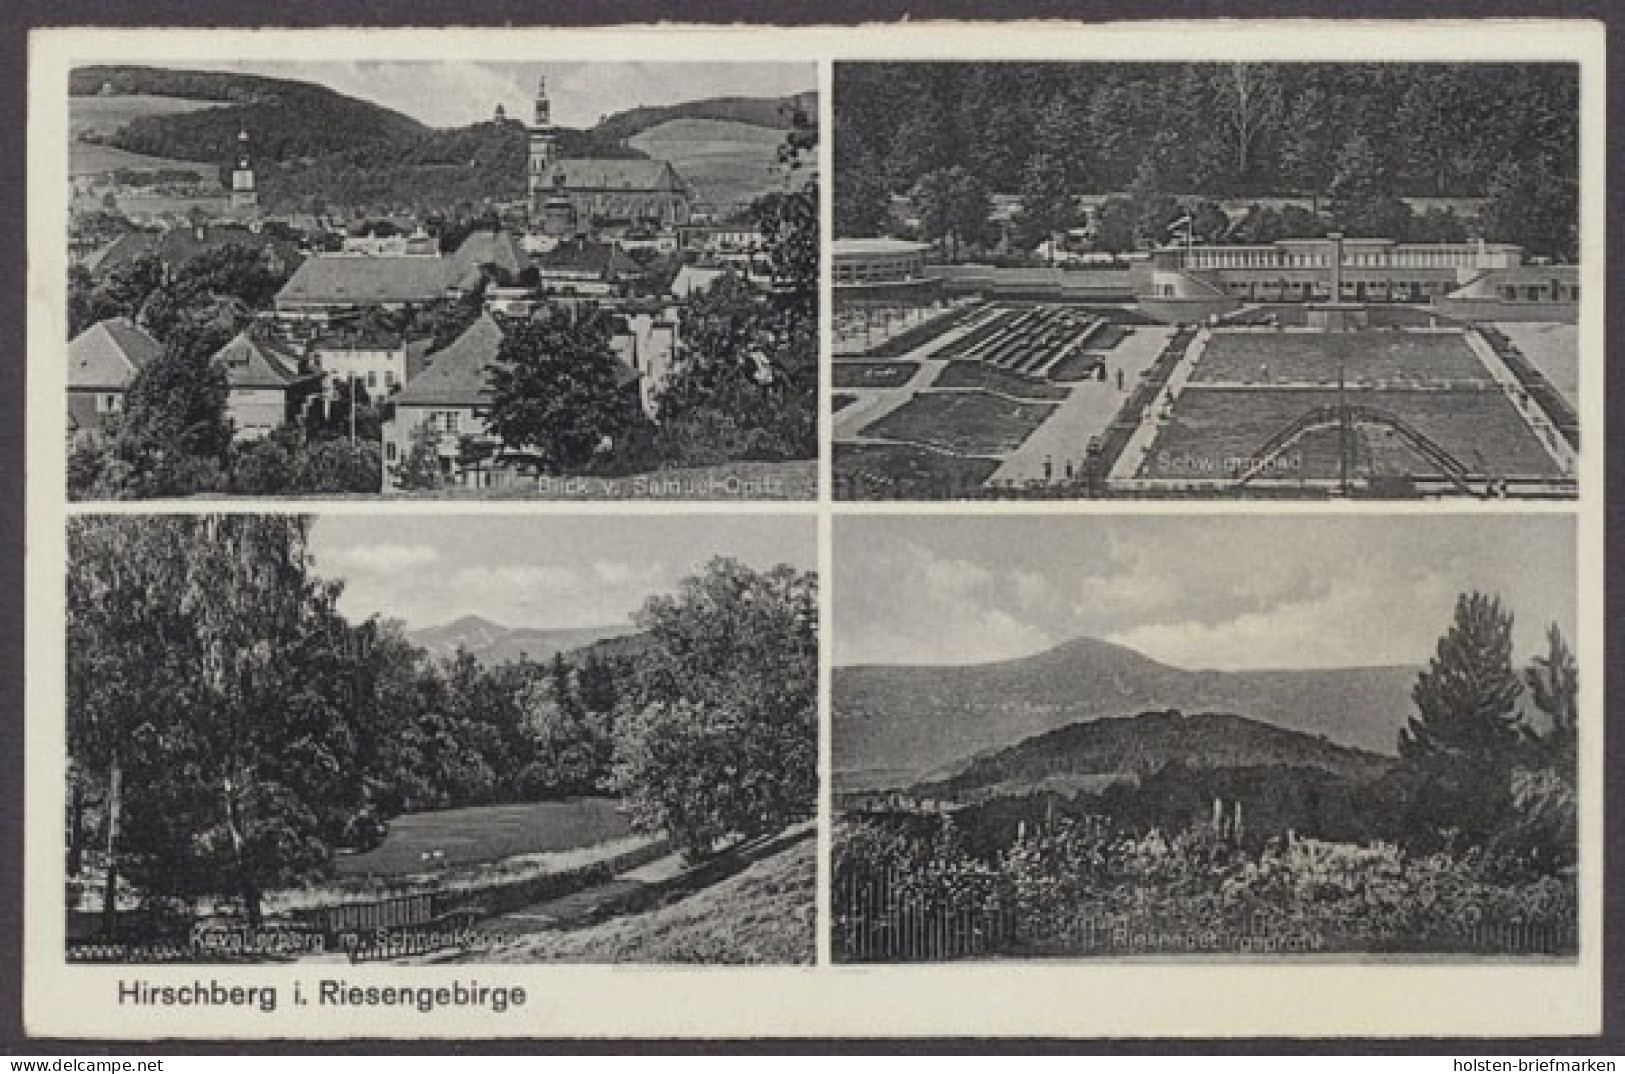 Hirschberg Im Riesengebirge, Blick V. Samuel-Opitz, Schwimmbad, Kavalierberg M. Schneekoppe, Riesengebirgsprofil - Schlesien